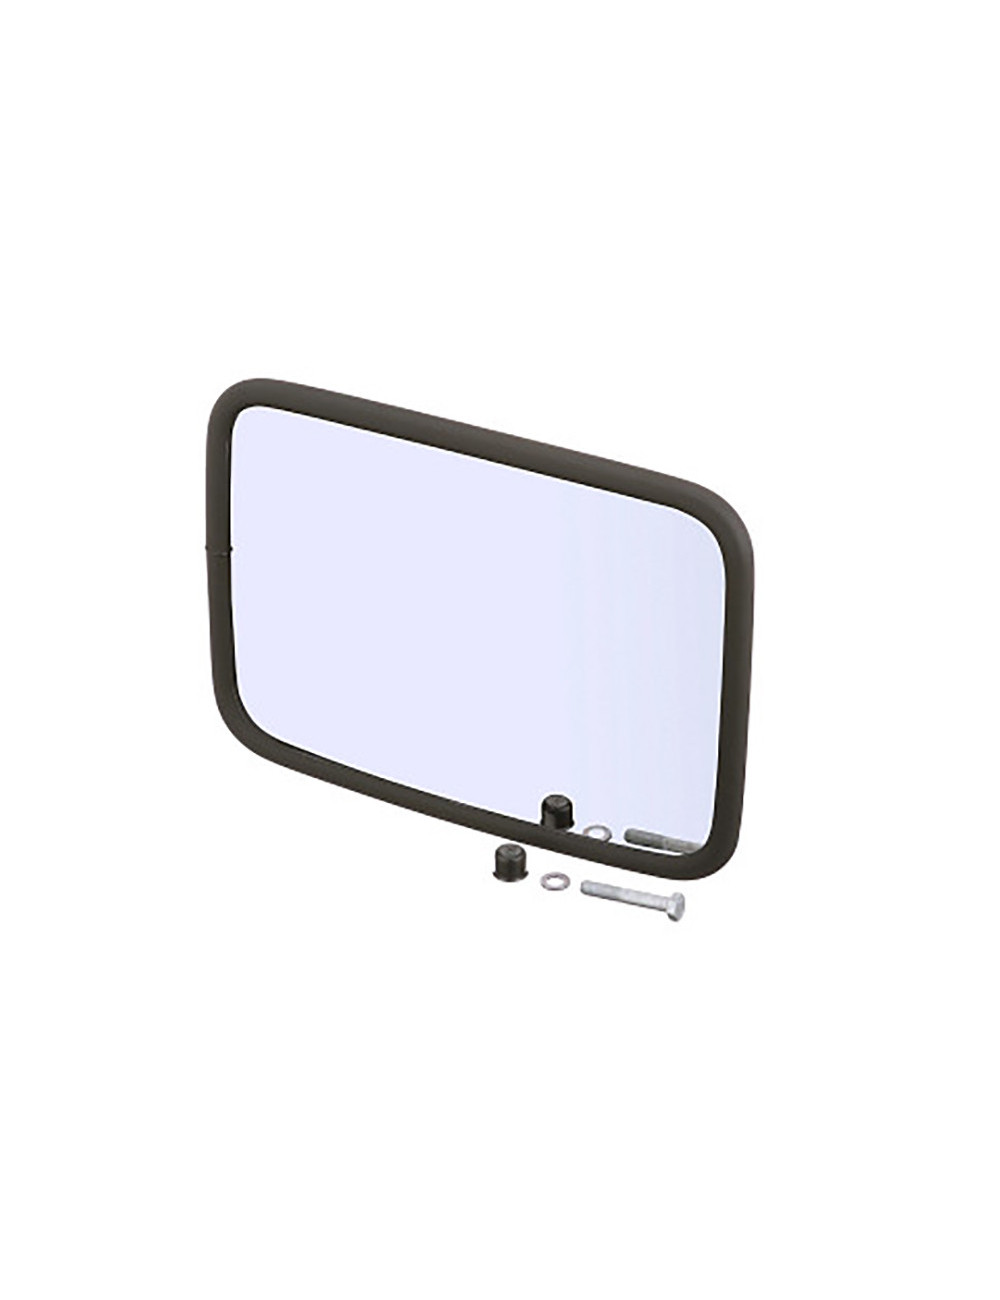 Specchio retrovisore New Holland - cod 47133664